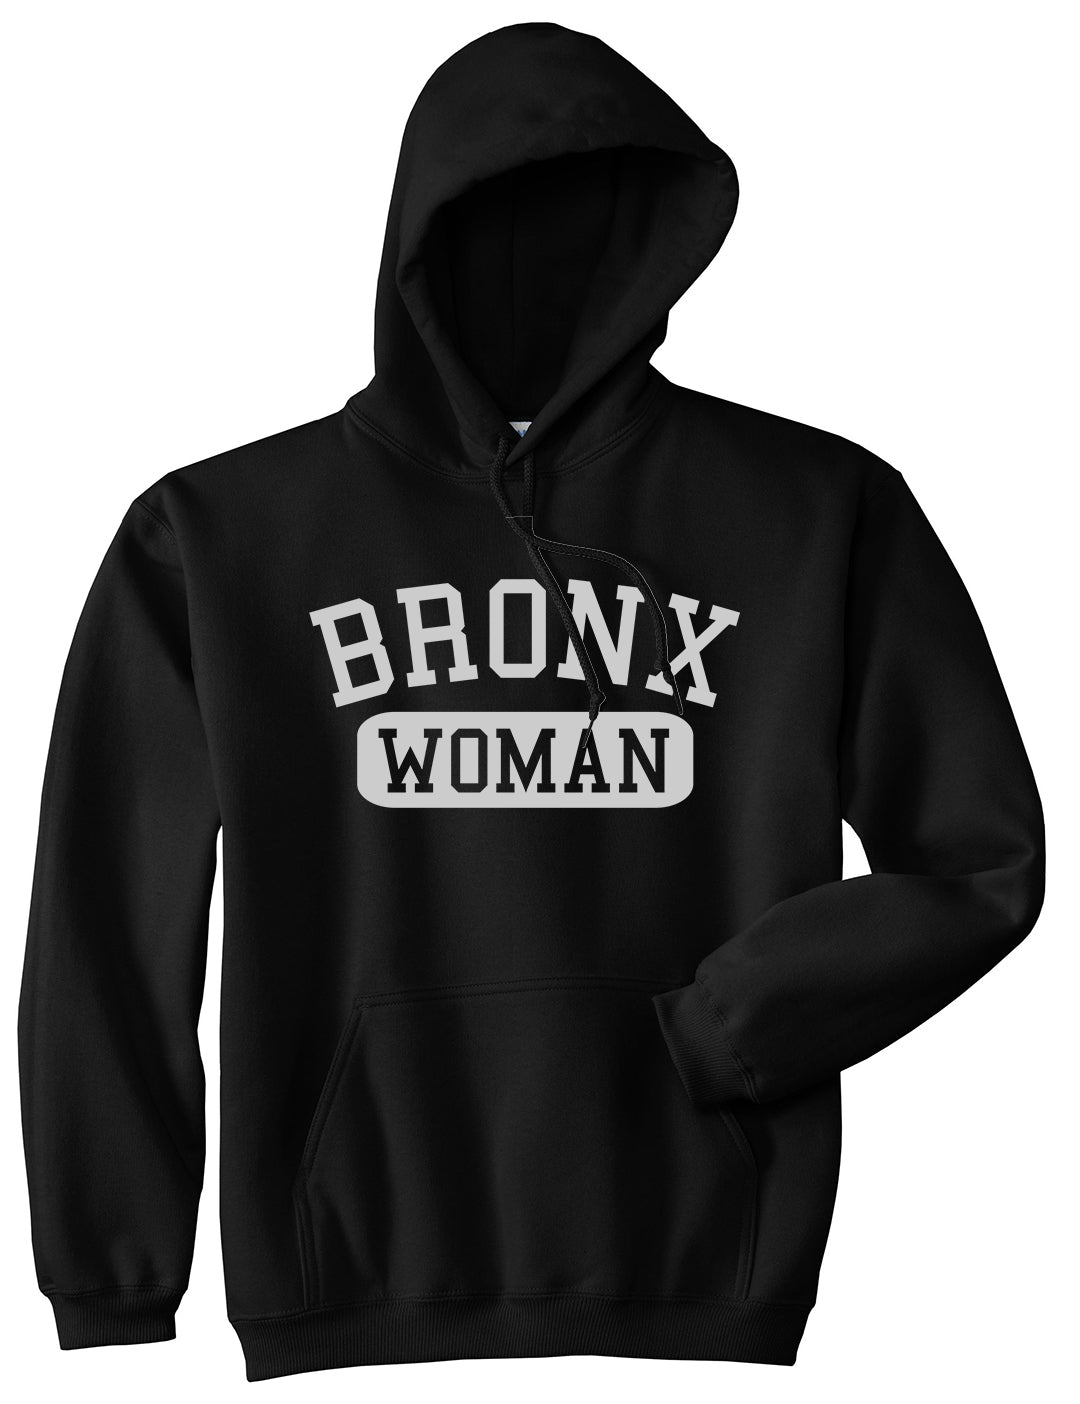 Bronx Woman Mens Pullover Hoodie Black